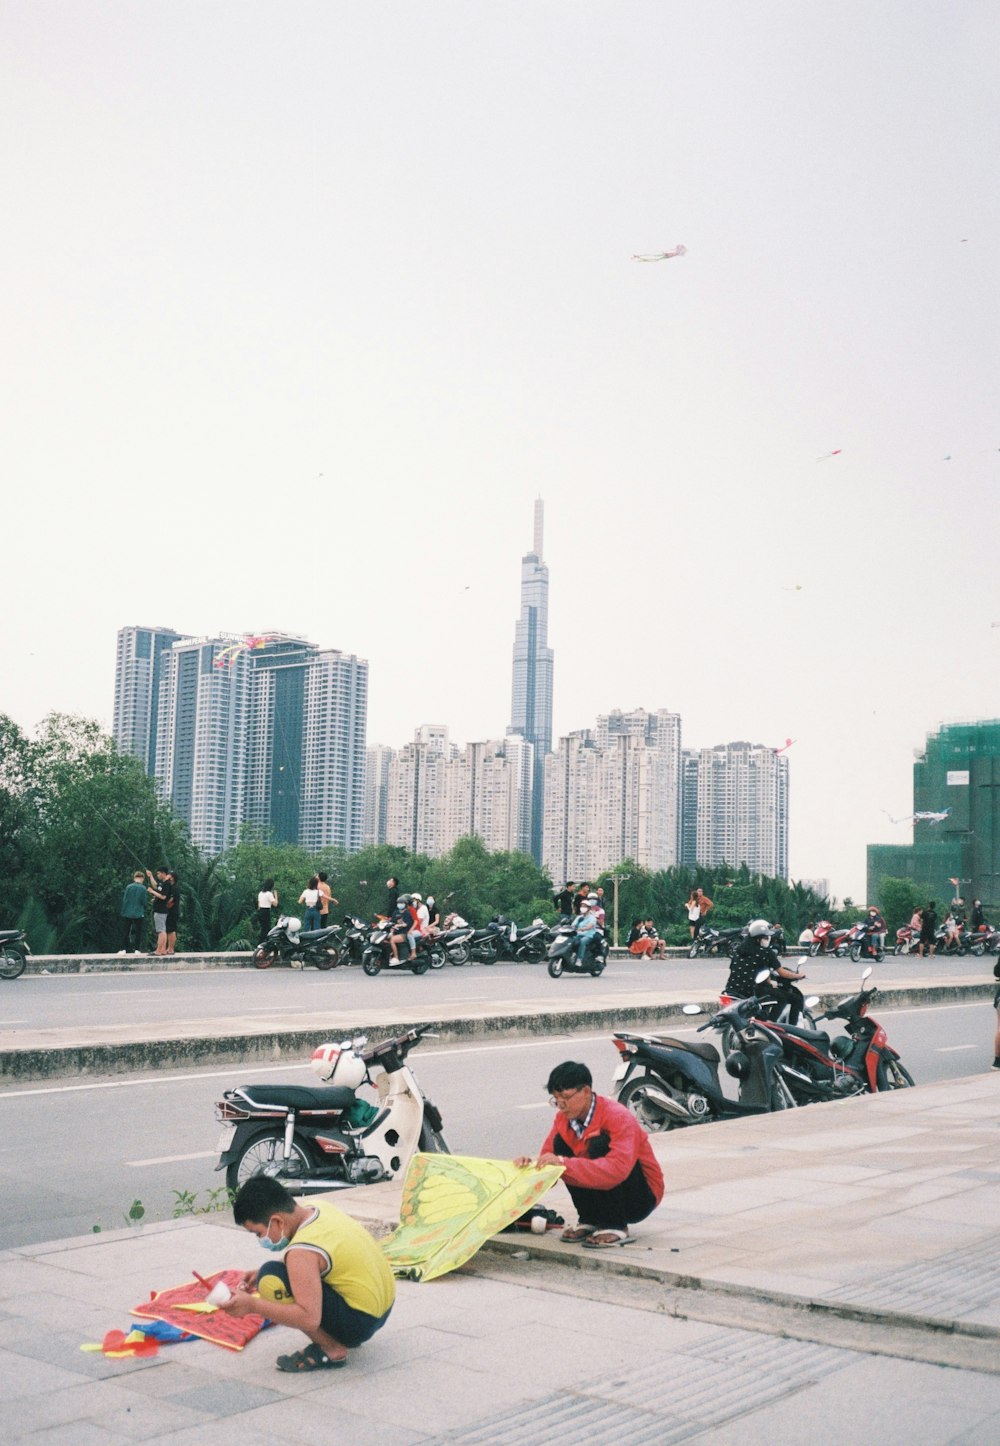 persone che guidano la motocicletta sulla strada vicino agli edifici della città durante il giorno